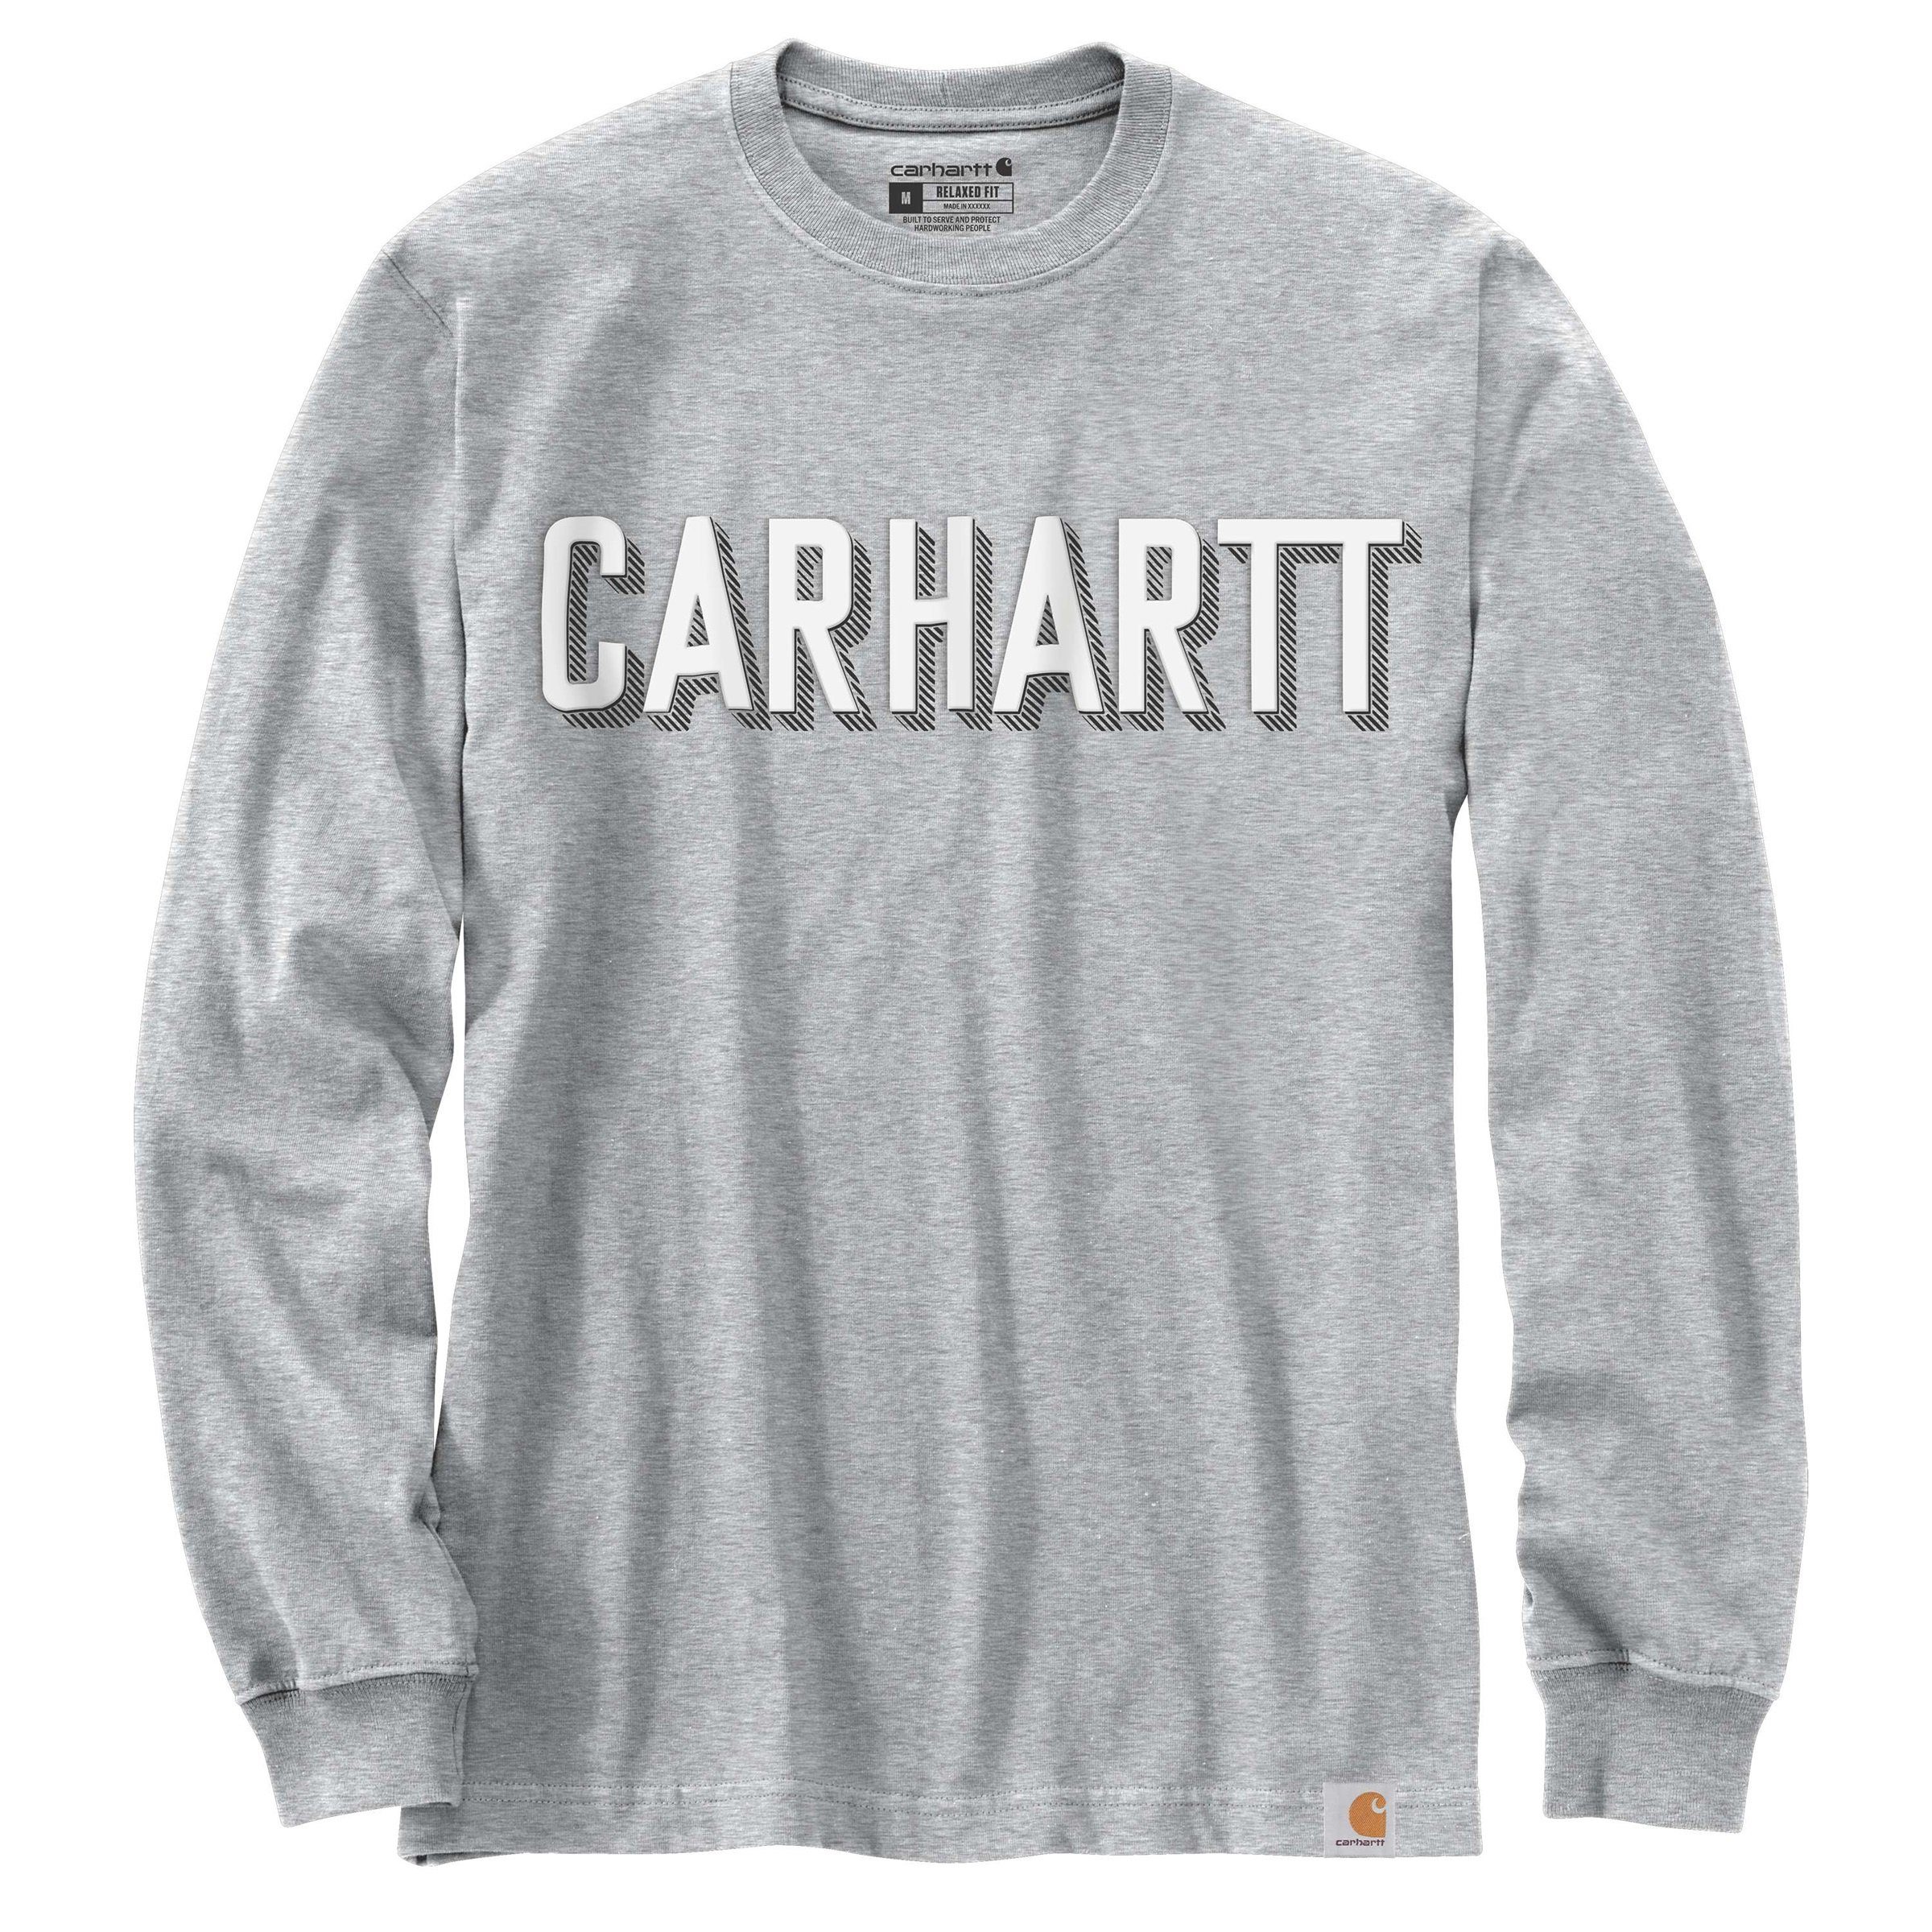 Adult Graphic Herren Heavyweight T-Shirt Logo grey Long-Sleeve Langarmshirt Carhartt Carhartt Block heather Relaxed Langarmshirt Fit